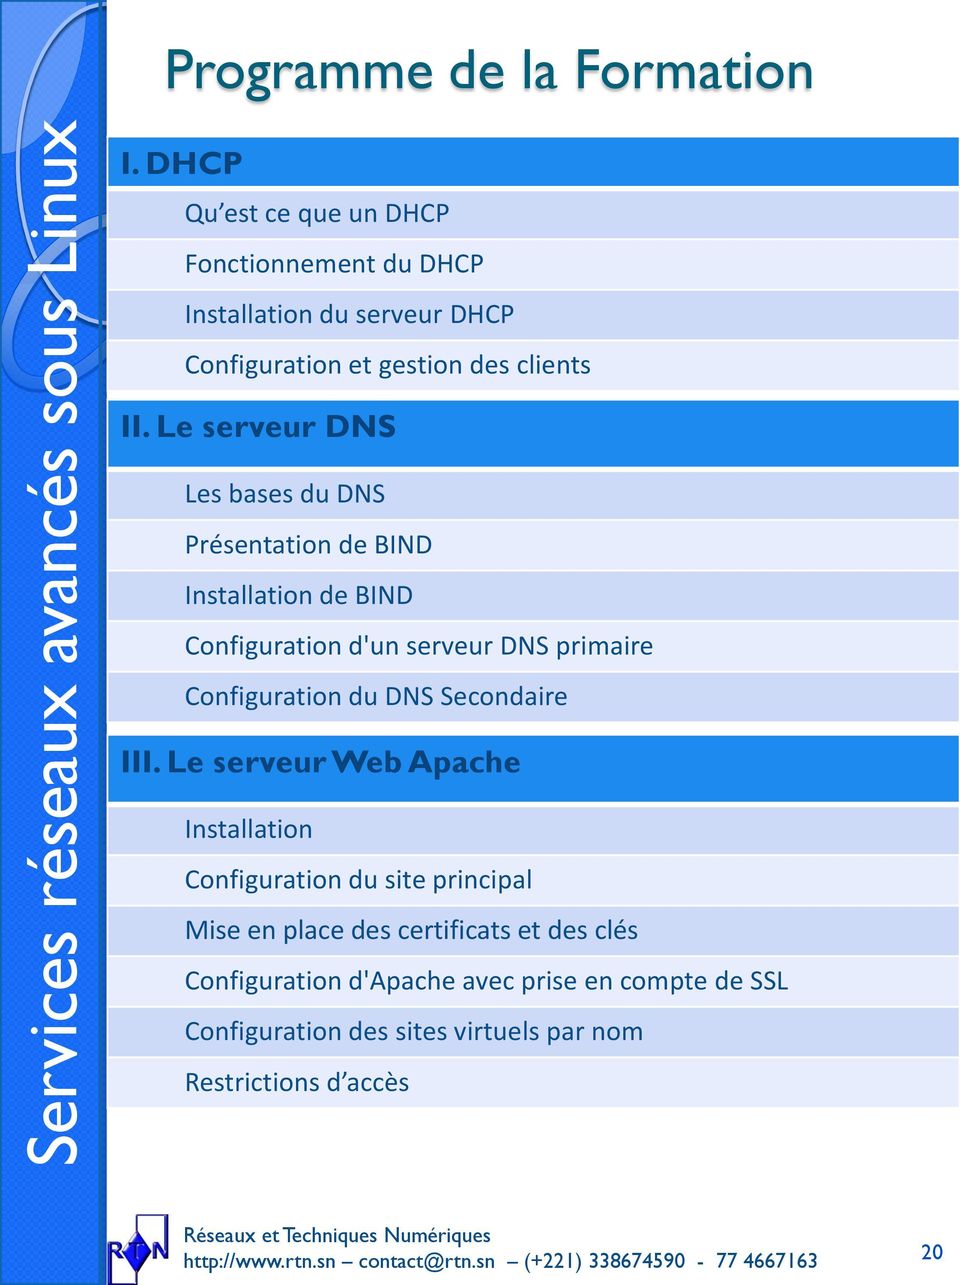 Le serveur DNS Les bases du DNS Présentation de BIND Installation de BIND Configuration d'un serveur DNS primaire Configuration du DNS